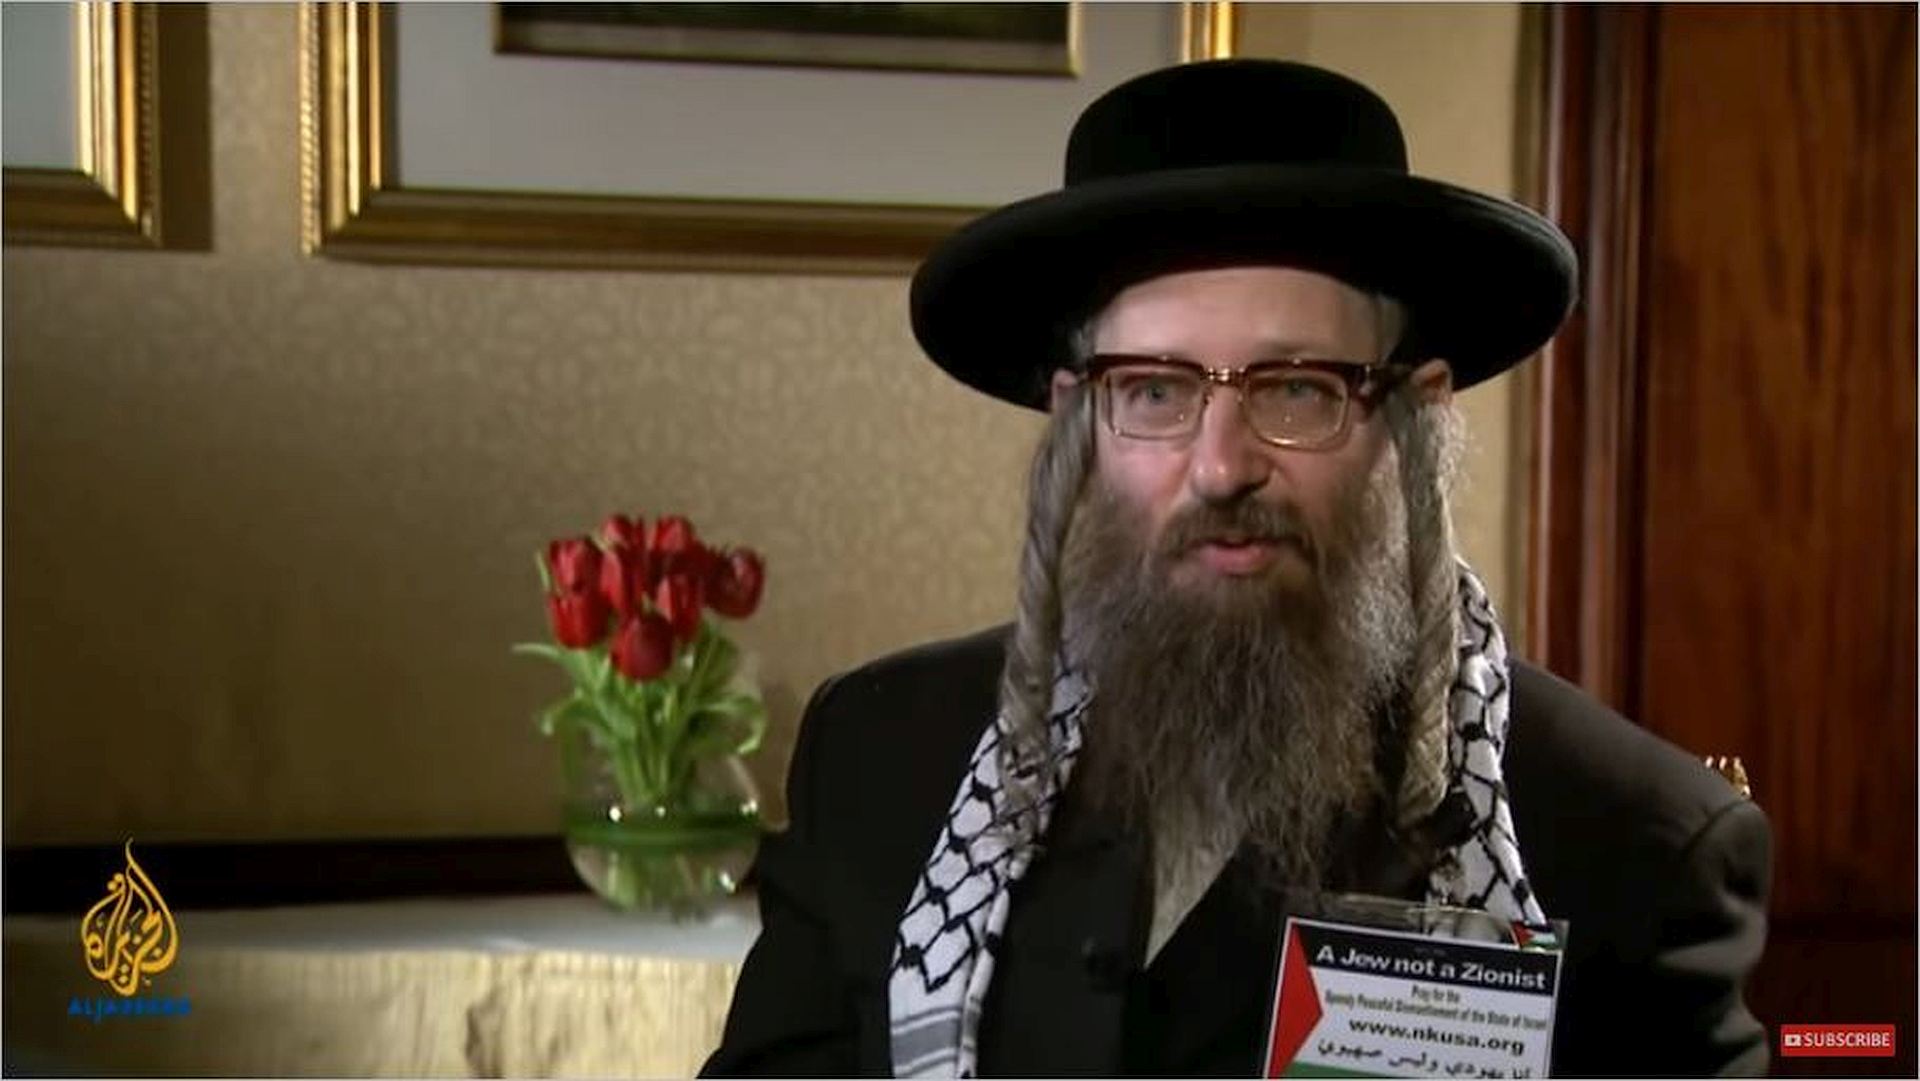 rabbi-davod-weiss-talk-to-al-jazeera-about-zionism-and-judaism-youtube-photo-1920x1081px